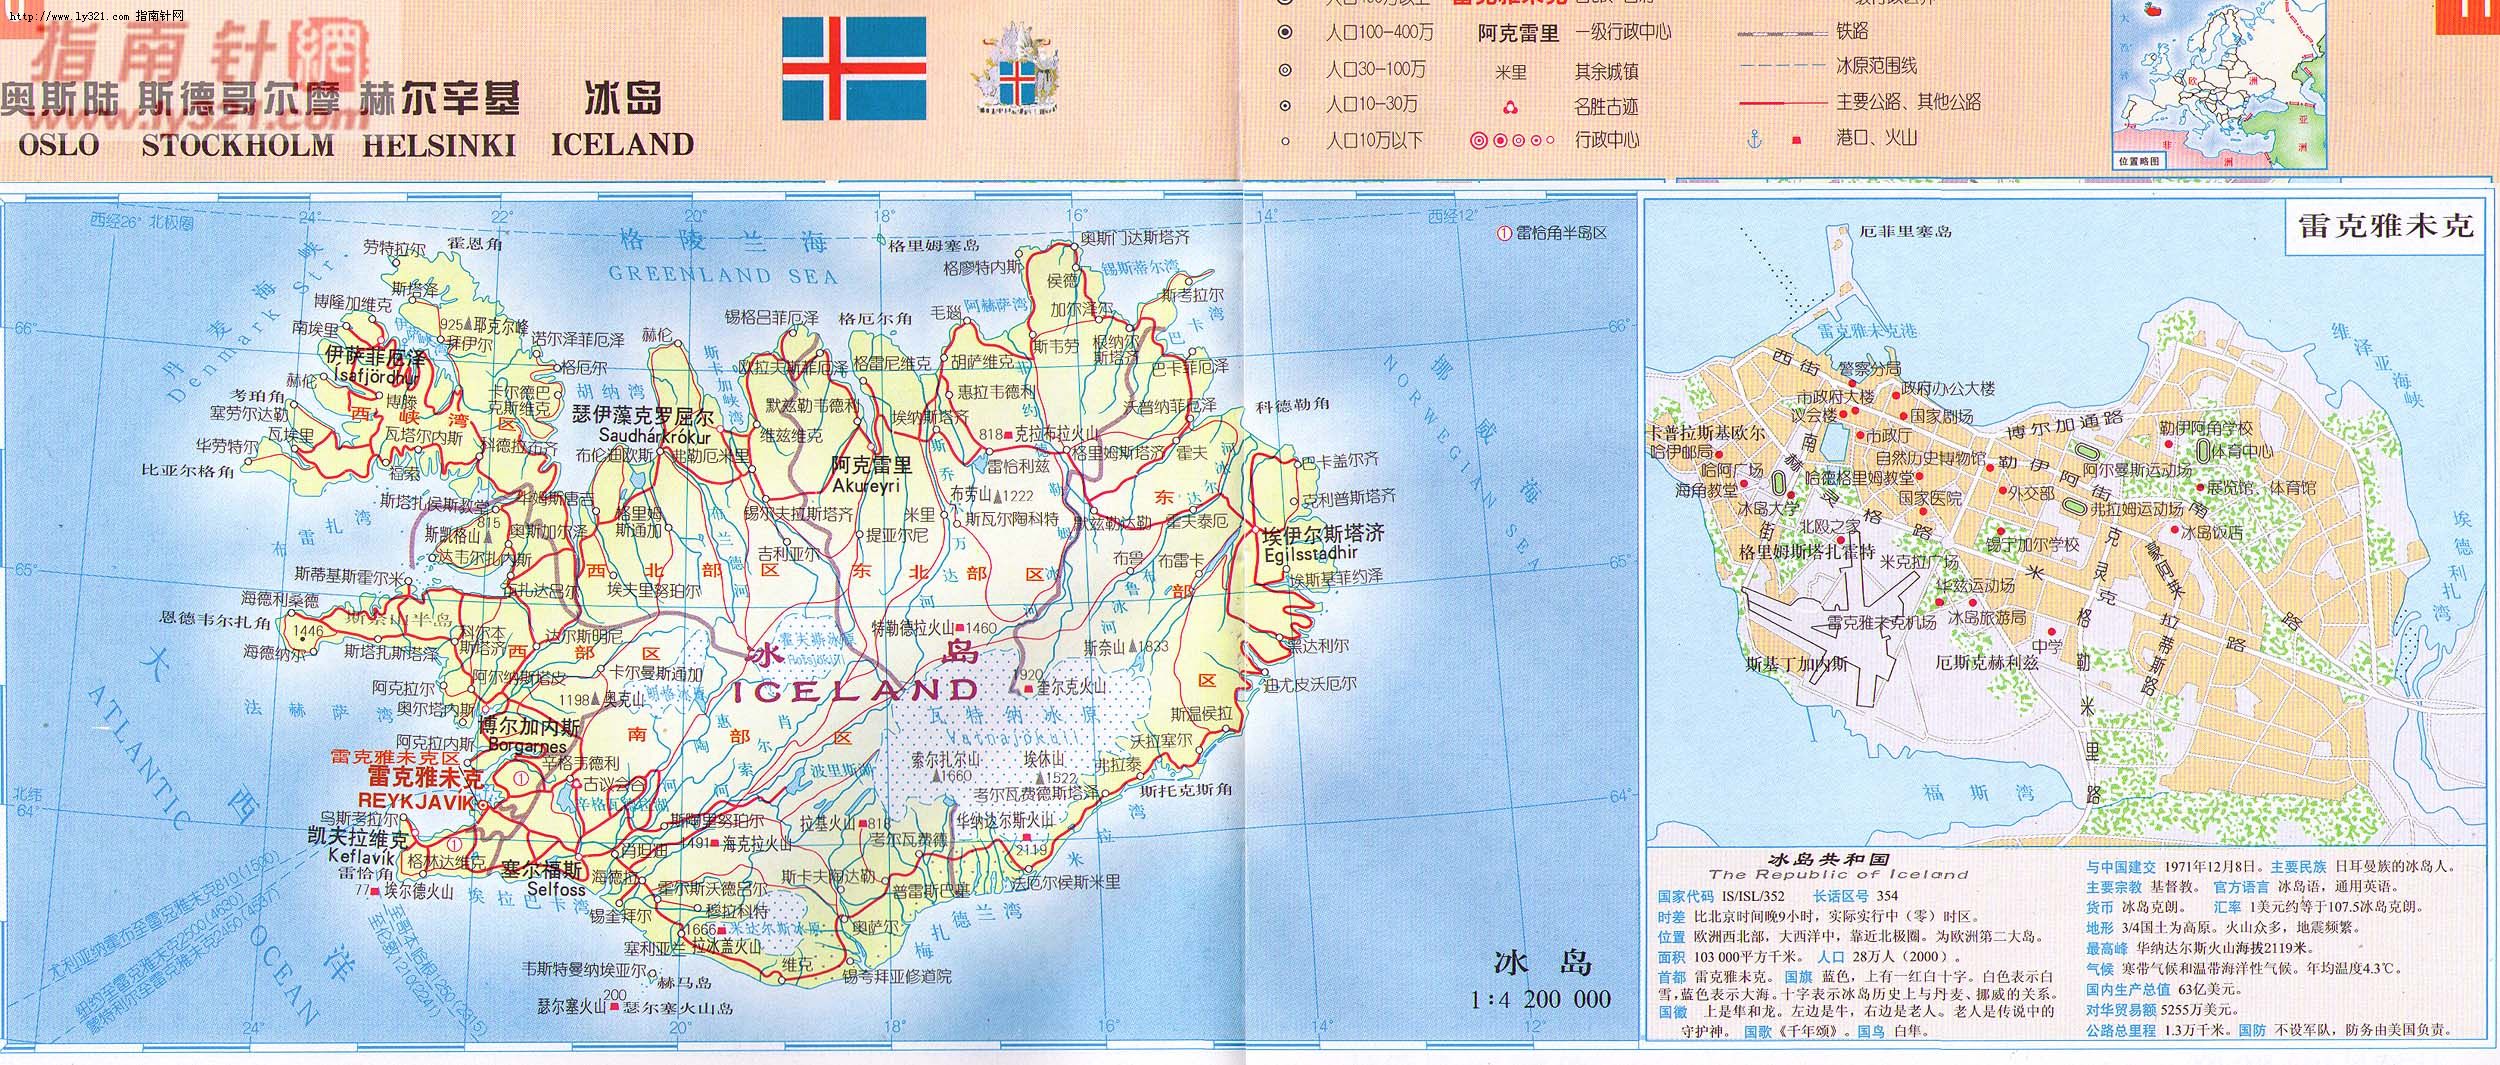 世界地圖-冰島.jpg